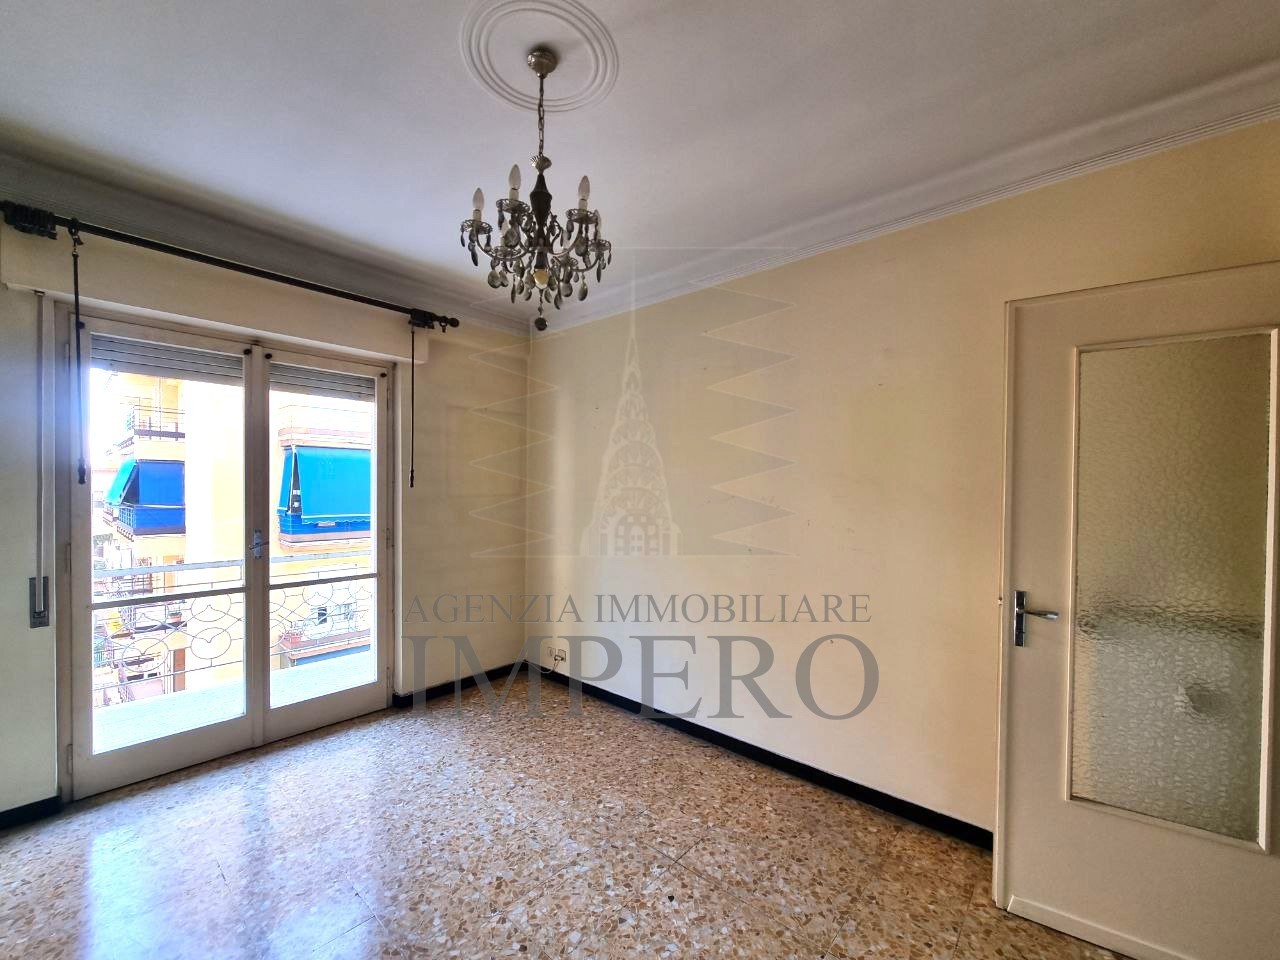 Appartamento in vendita a Ventimiglia, 3 locali, prezzo € 210.000 | PortaleAgenzieImmobiliari.it